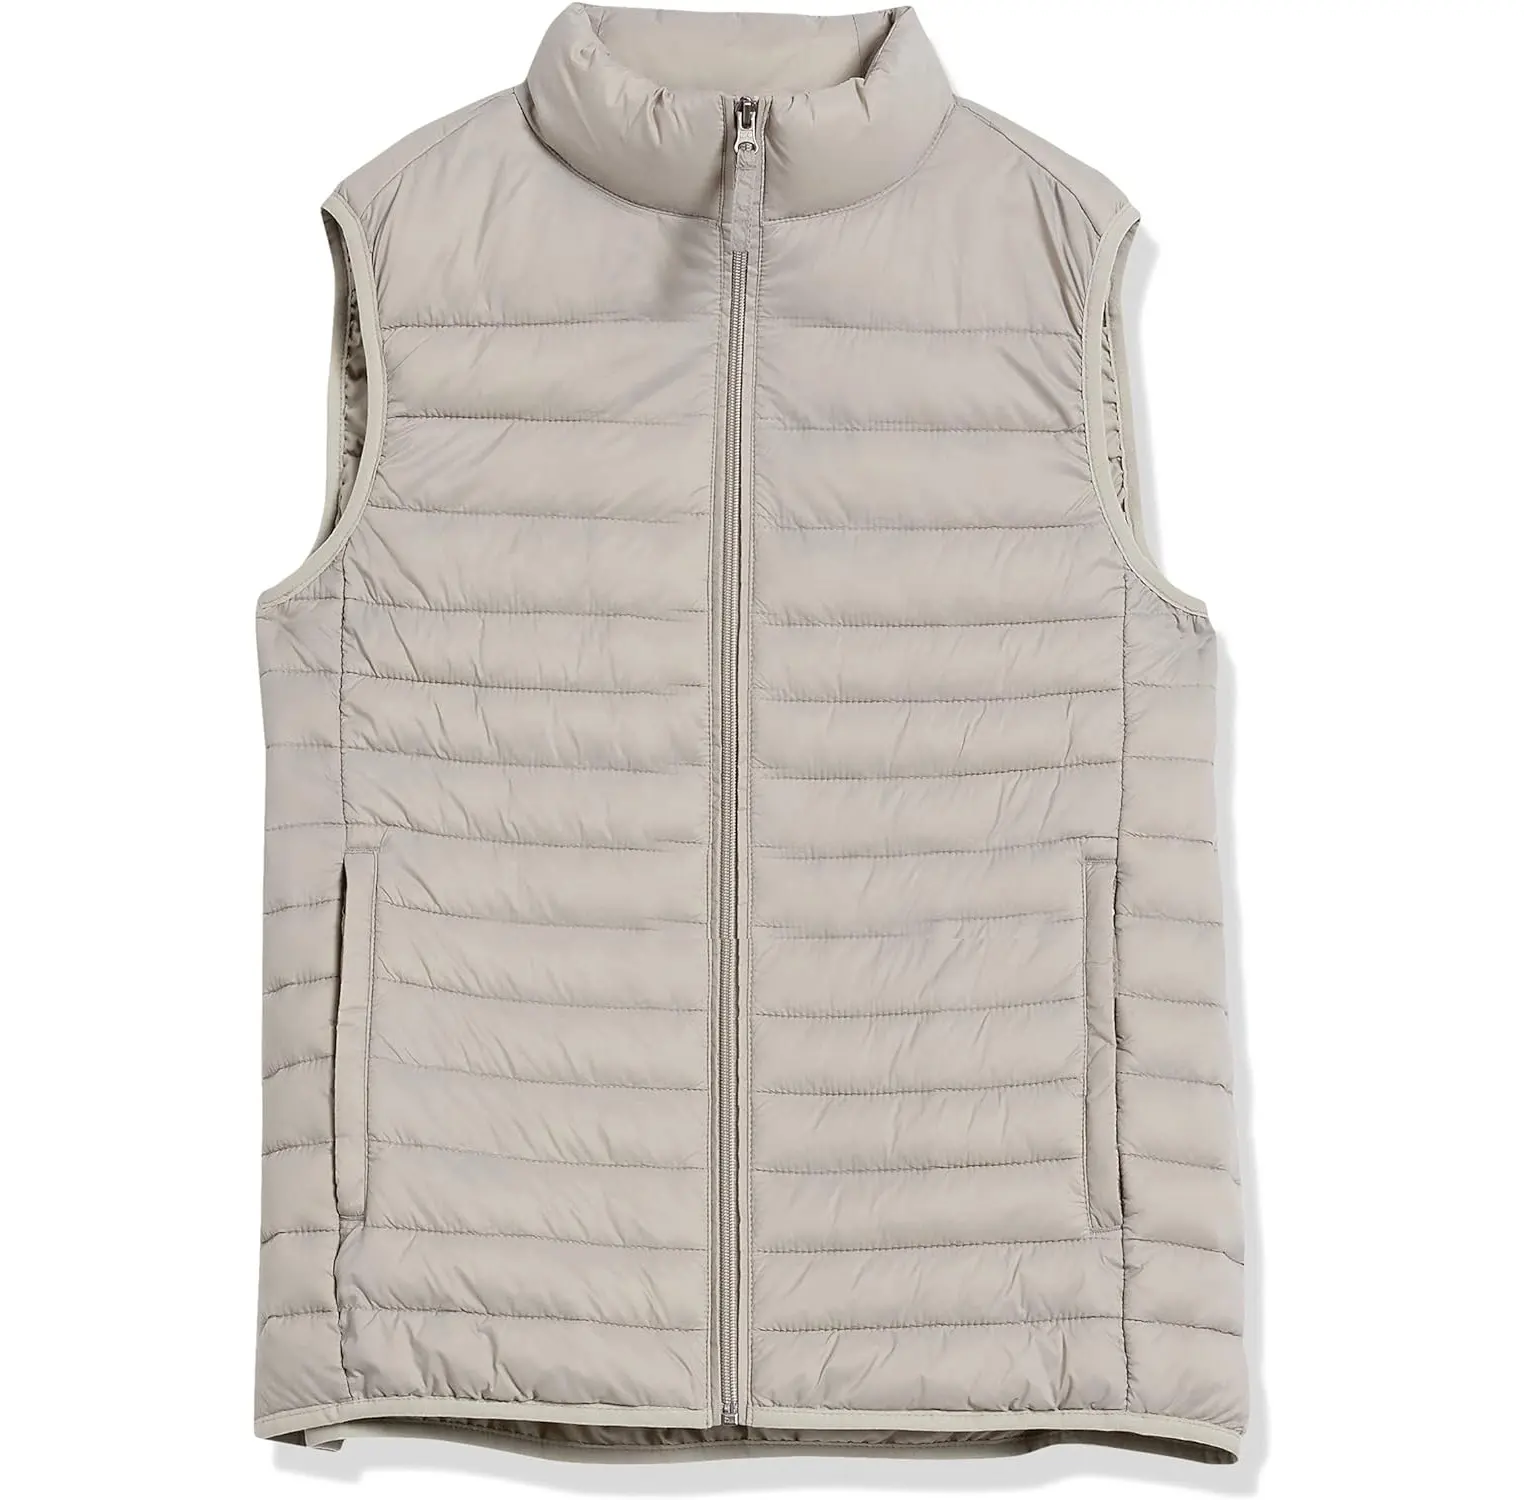 ओएम कस्टम लोगो स्लीवलेस बबल पुफर बनियान कपड़े वास्टकोट पुरुषों के लिए गर्म सर्दियों शरद ऋतु आकार एल एम 5xl